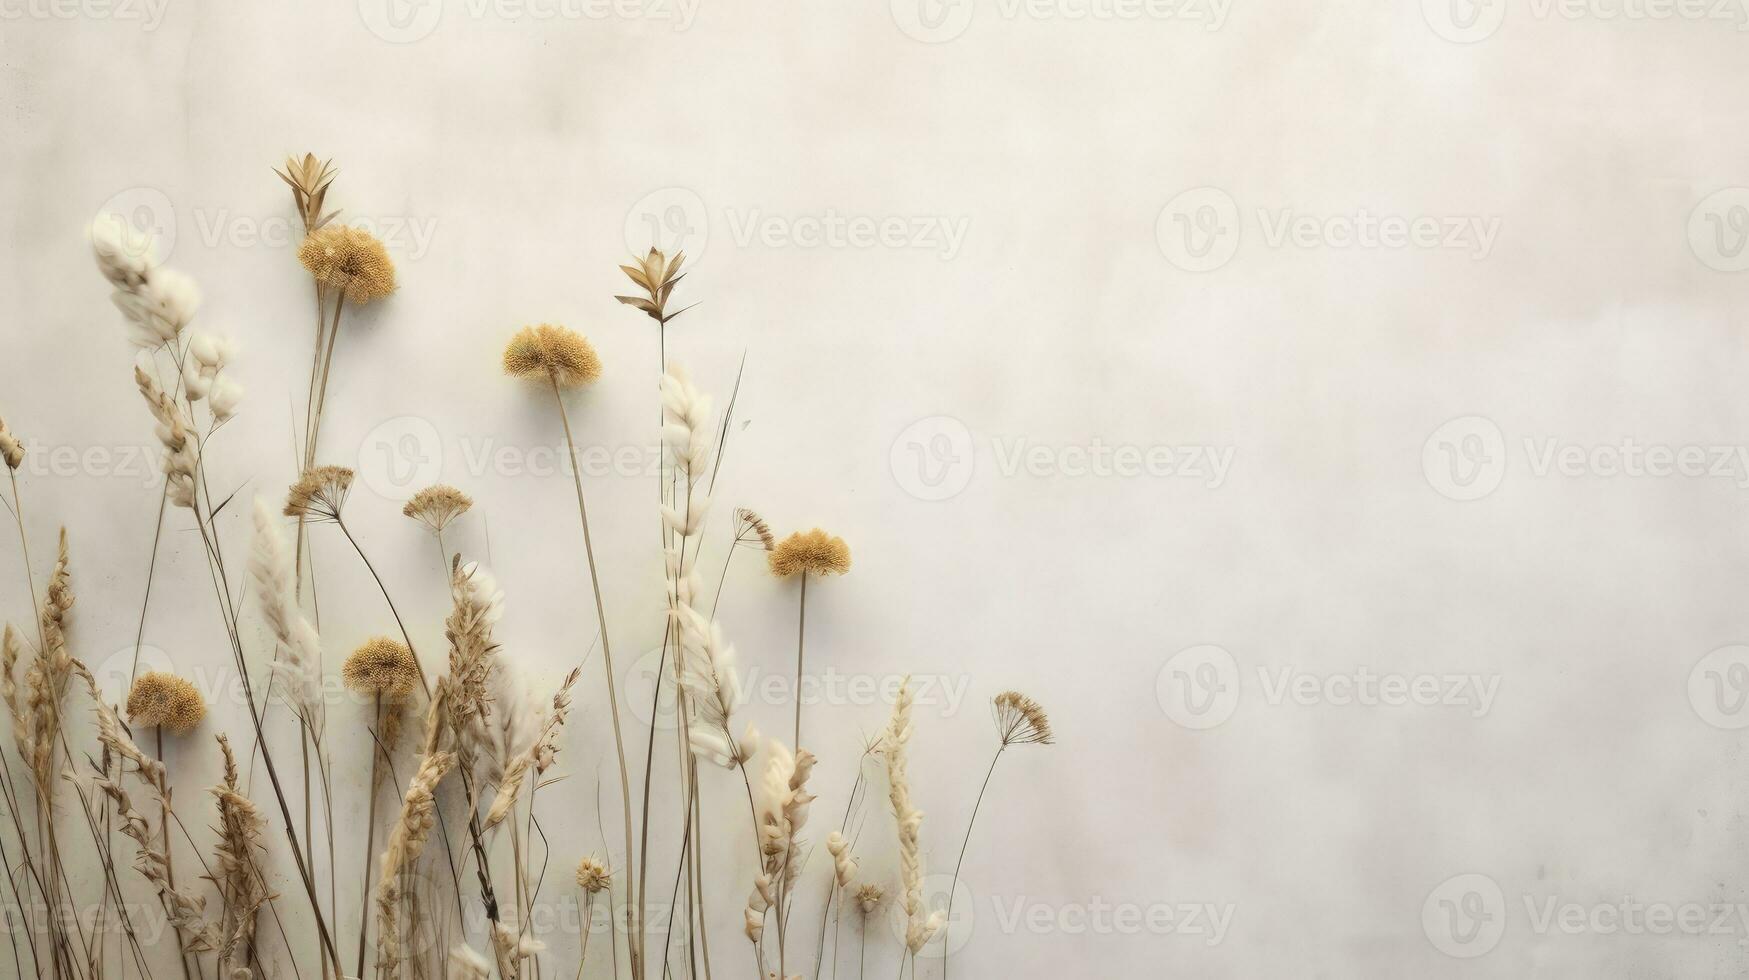 eben legen von getrocknet Feld Blumen mit Schatten projiziert auf ein grau texturiert Hintergrund isoliert minimal handgemacht Öko Natur Konzept zum Blogger. Silhouette Konzept foto